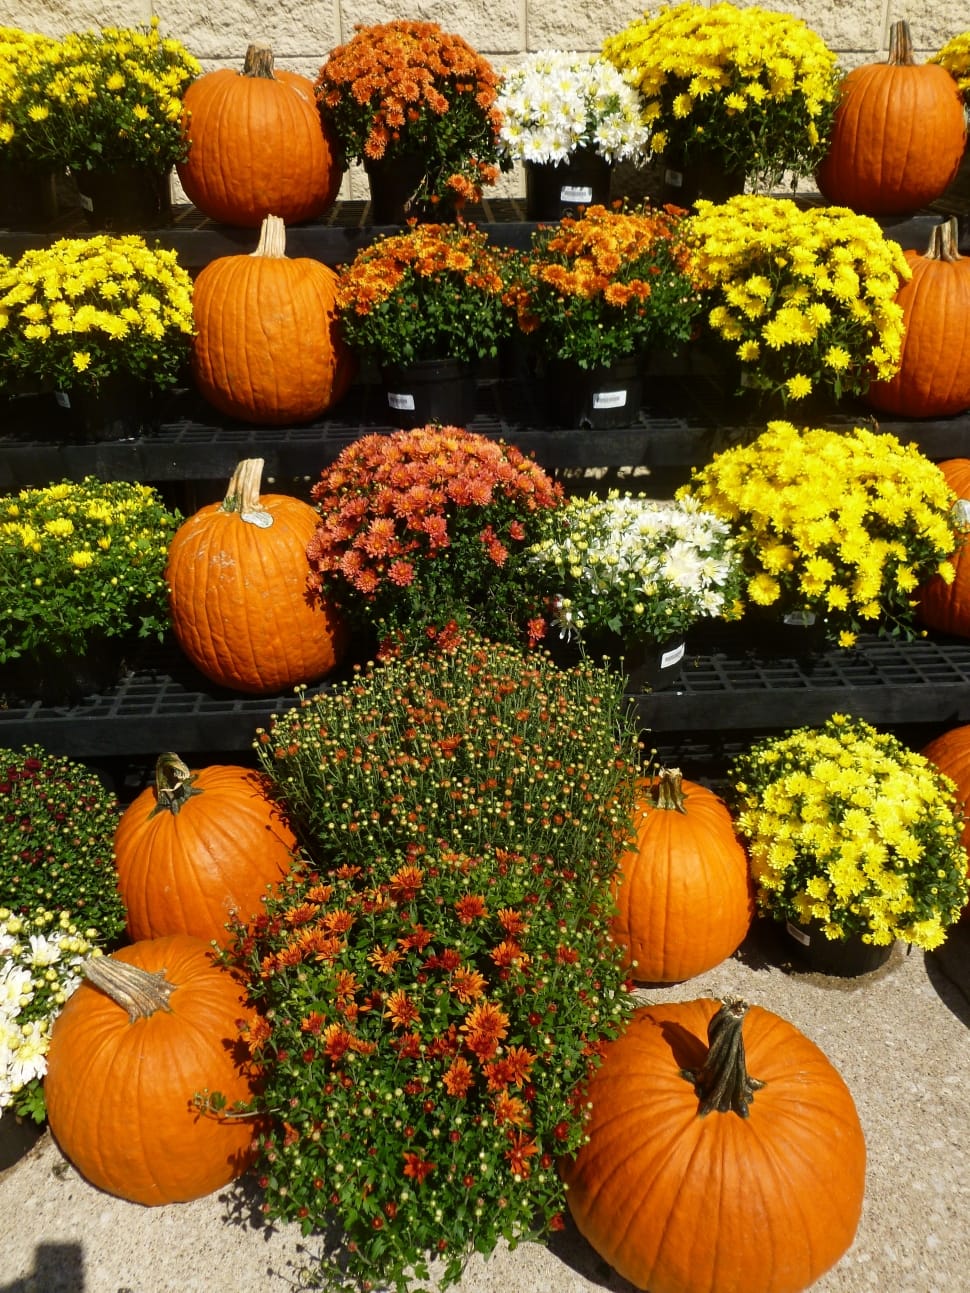 Market, Flowers, Autumn, Pumpkins, pumpkin, vegetable preview